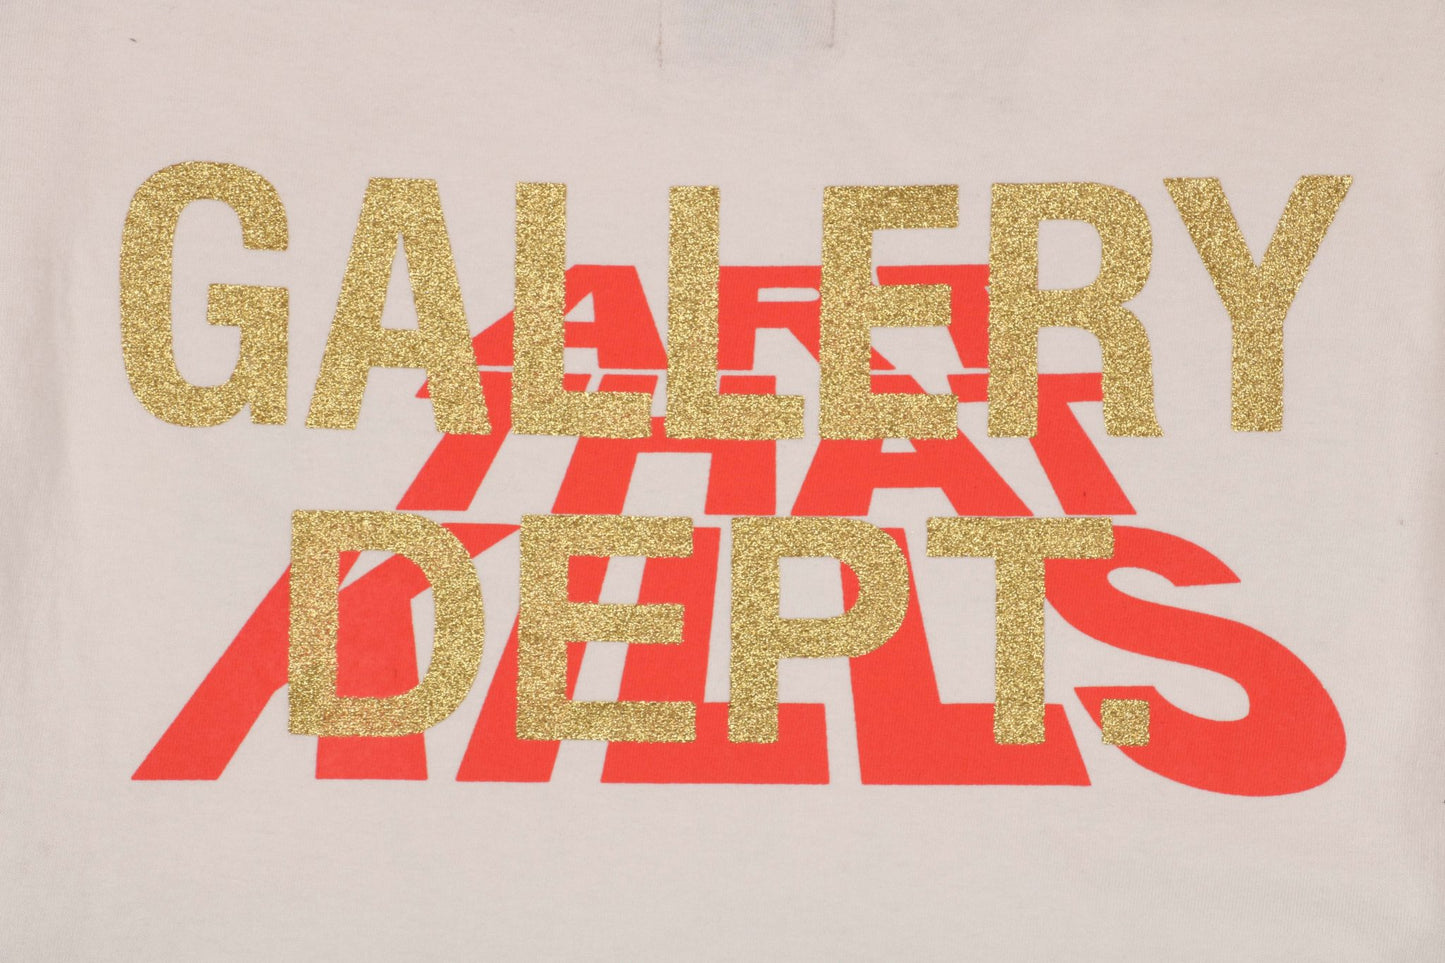 Gallery Dept Corona Virus T-Shirt